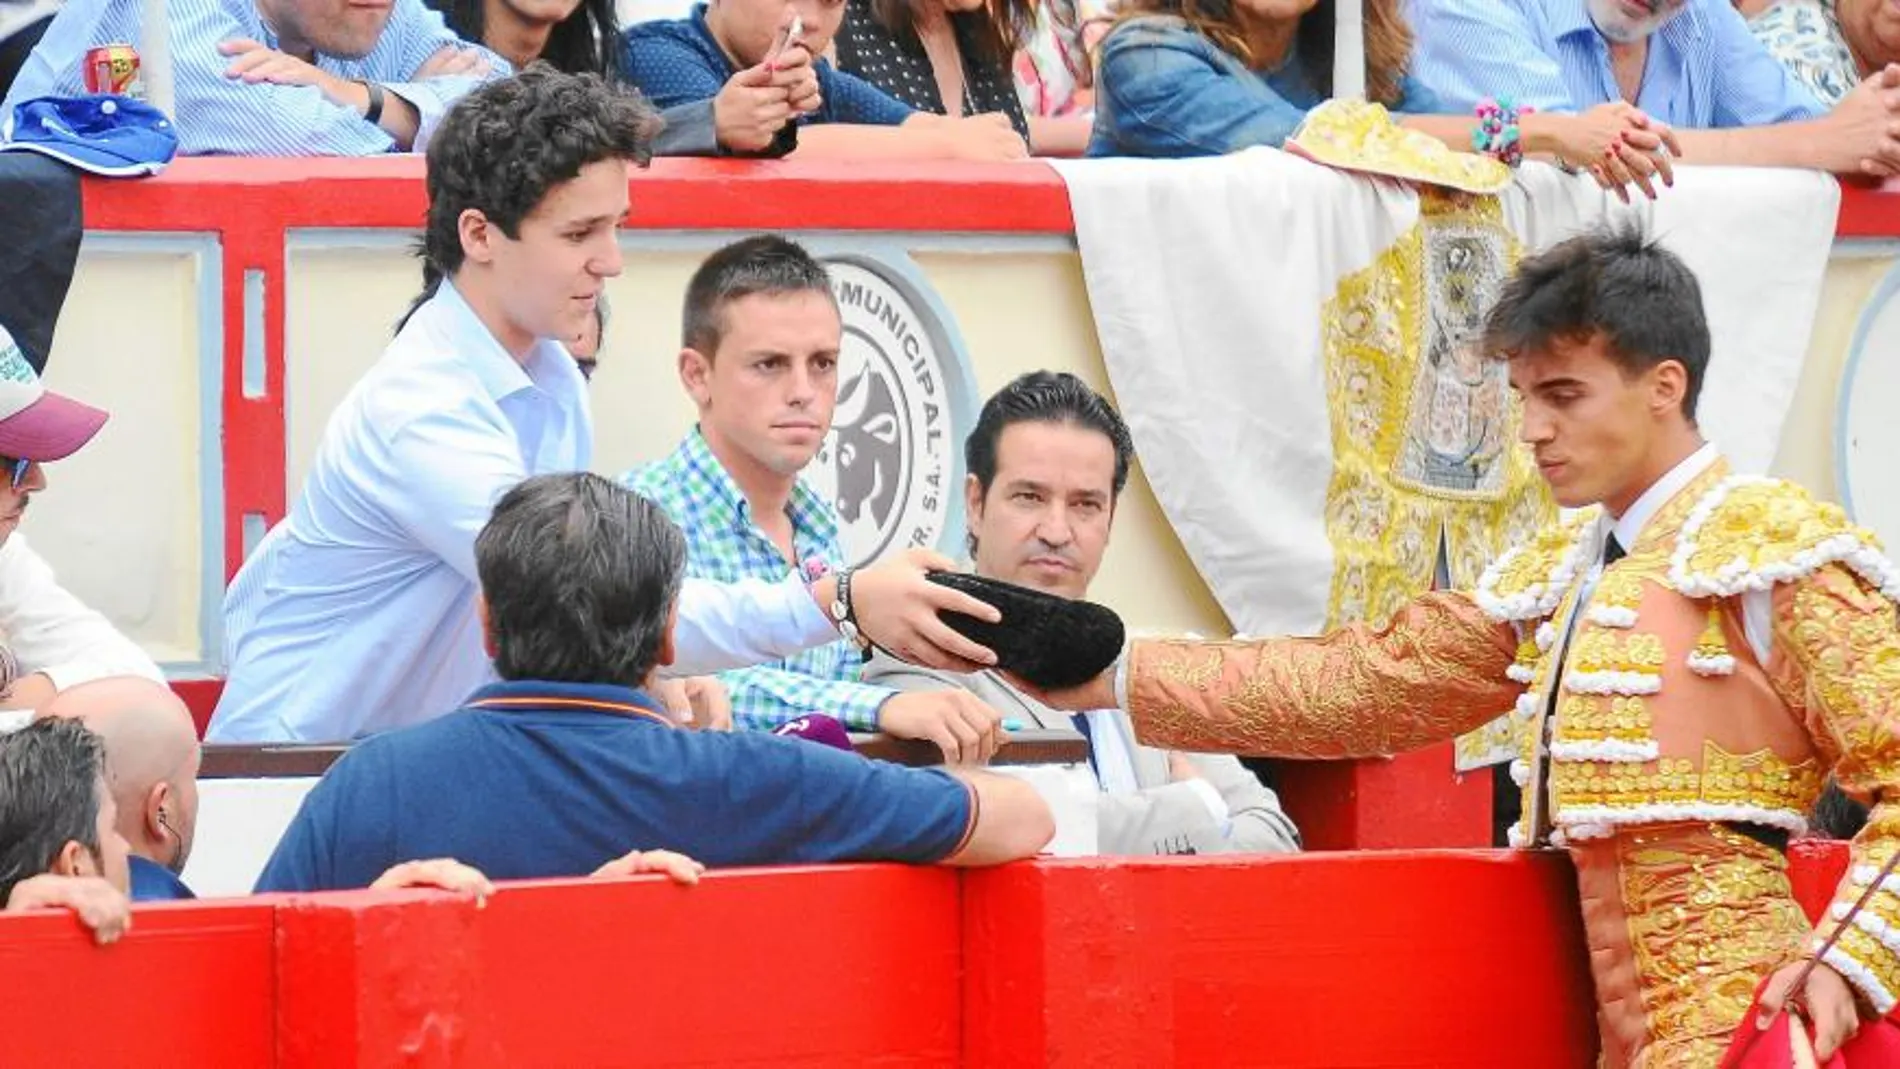 Felipe Juán ha heredado la afición por la tauromaquía y ya recibe brindis, en este caso el de Gonzalo Caballero